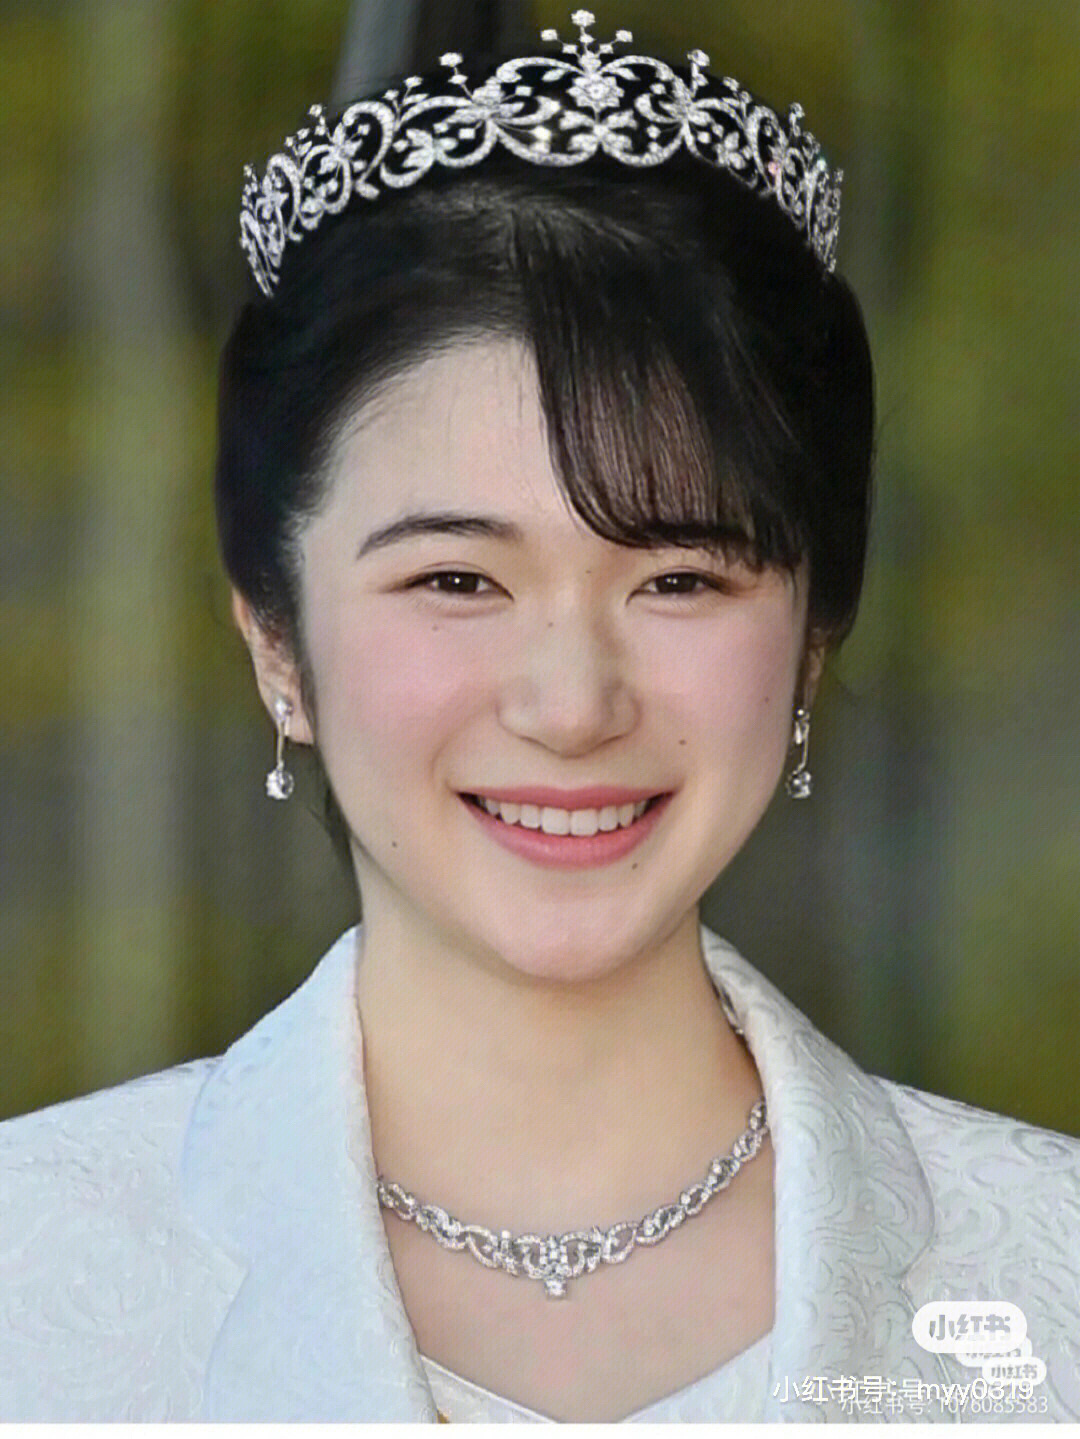 日本公主头发型图片